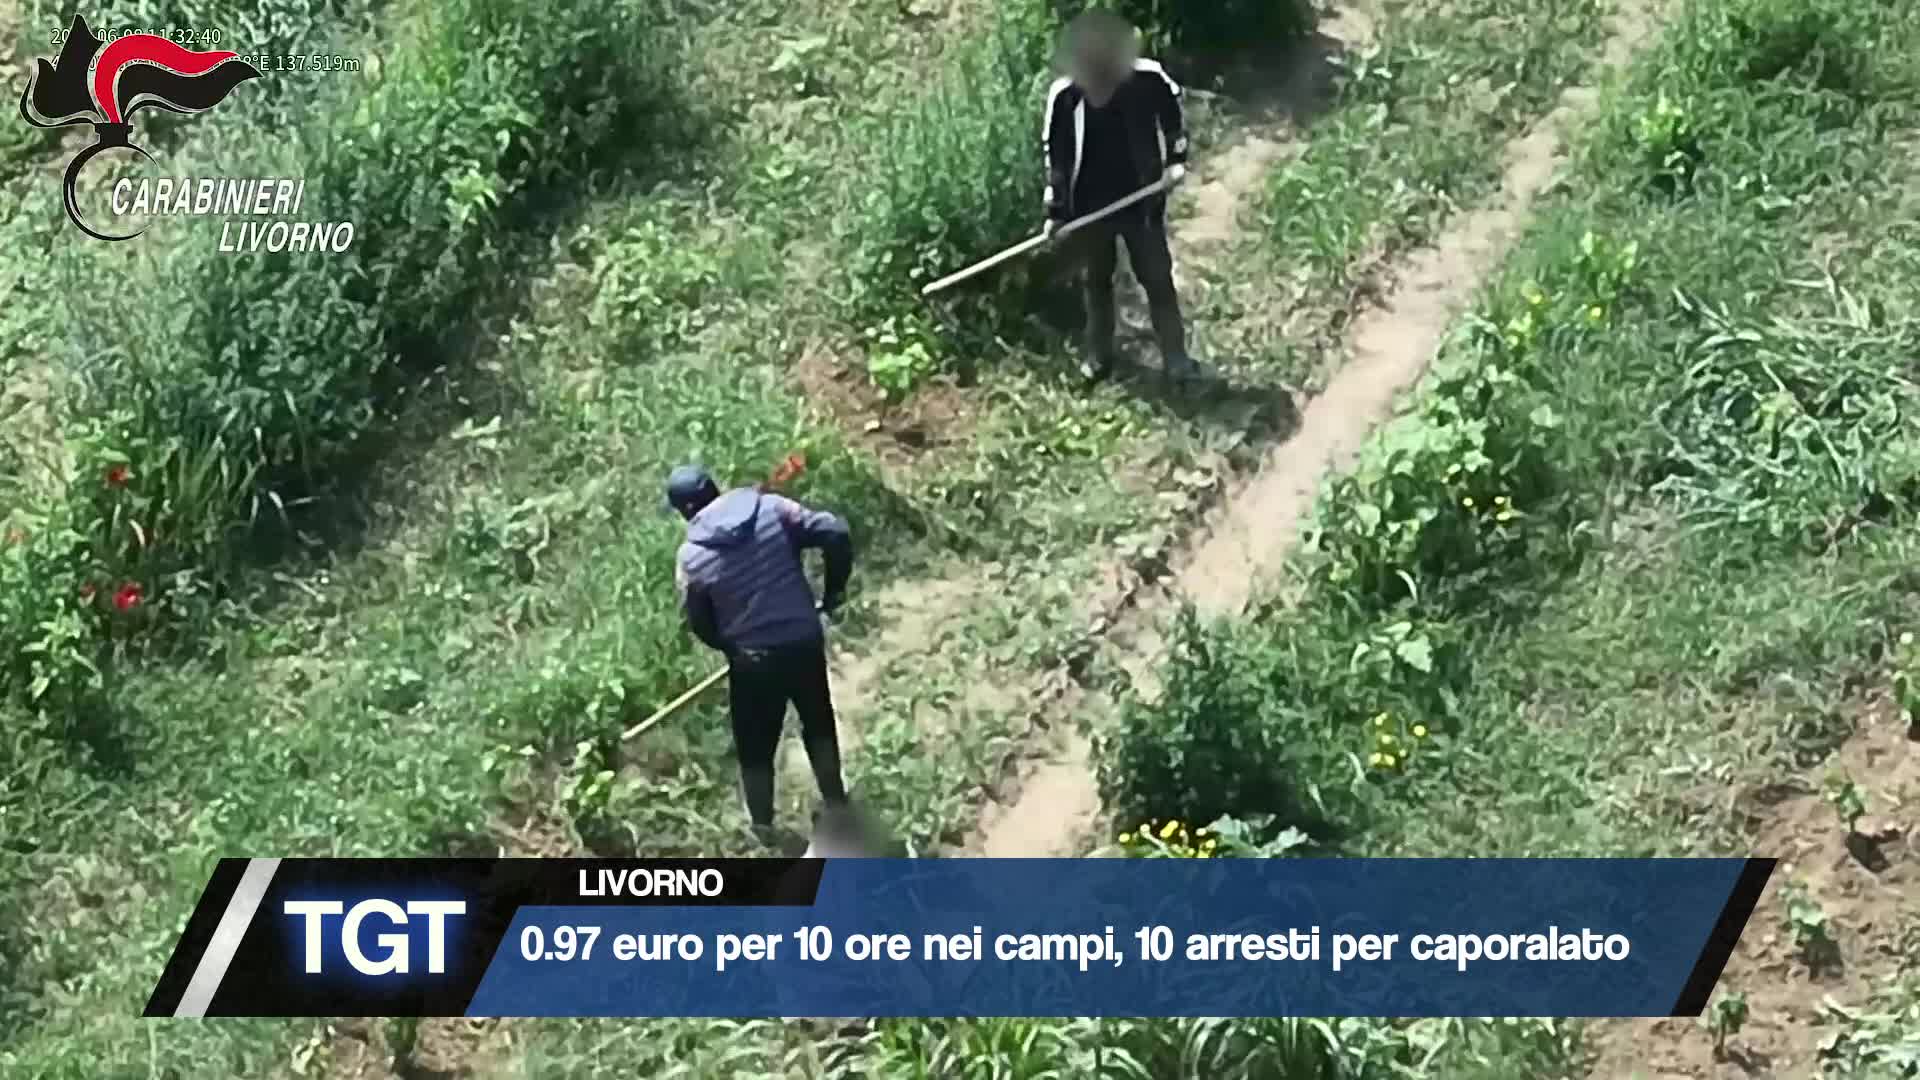 Livorno - Caporalato nei campi, 10 arresti Thumbnail